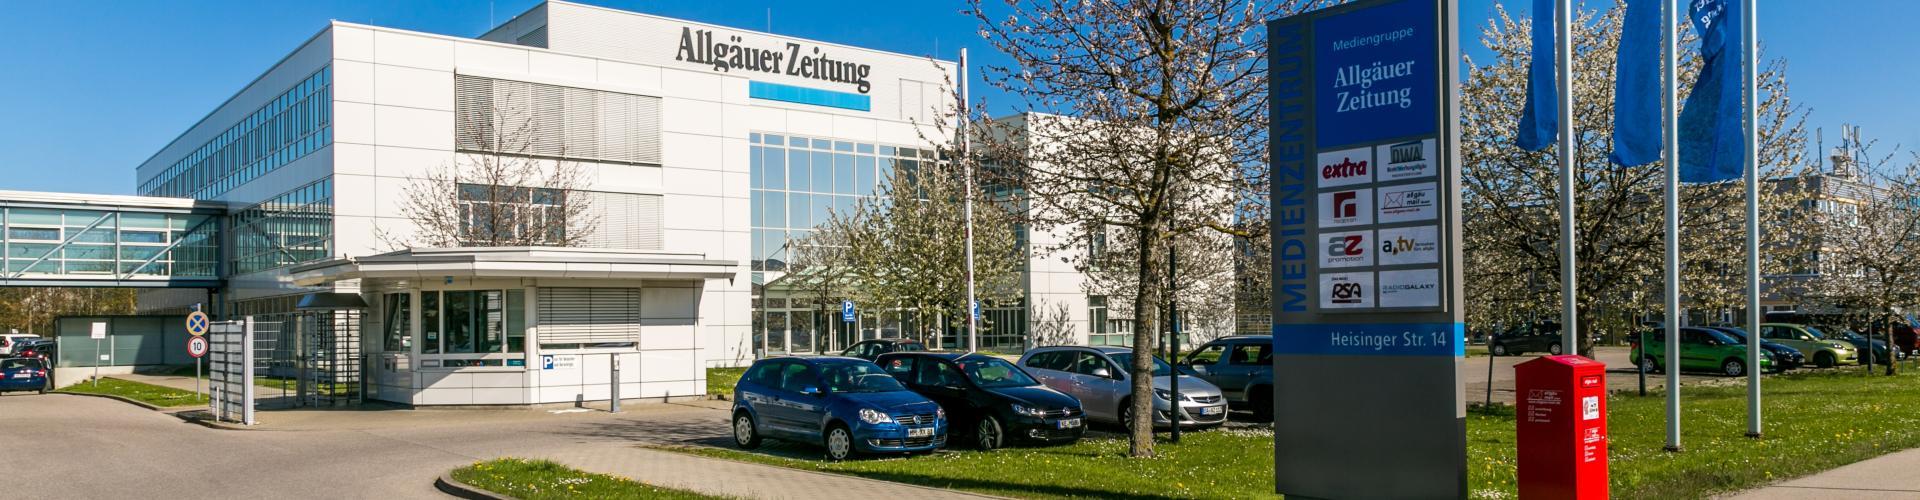 Mediengruppe Allgäuer Zeitung als Ausbildungsbetrieb cover